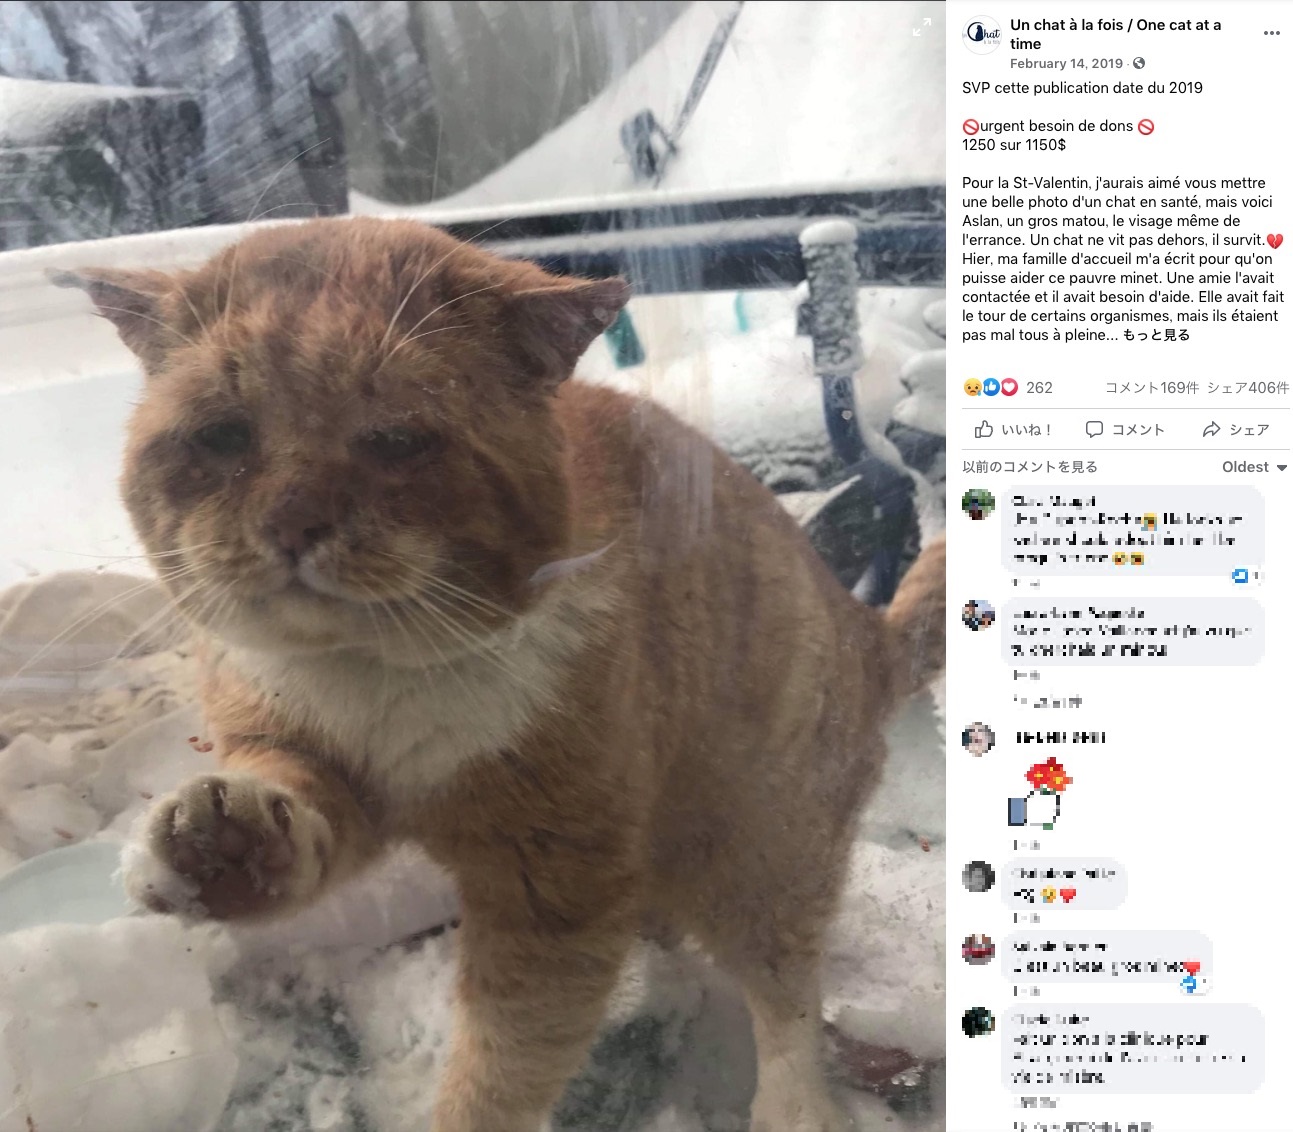 カナダのケベック州のある家で2019年2月、窓ガラス越しに雪の中で凍えそうにしている猫がいた。猫は「中に入れて欲しい」と言わんばかりの表情でガラス窓をノックするように引っ掻いていたという（画像は『Un chat à la fois / One cat at a time﻿　2019年2月14日付Facebook「SVP cette publication date du 2019」』のスクリーンショット）